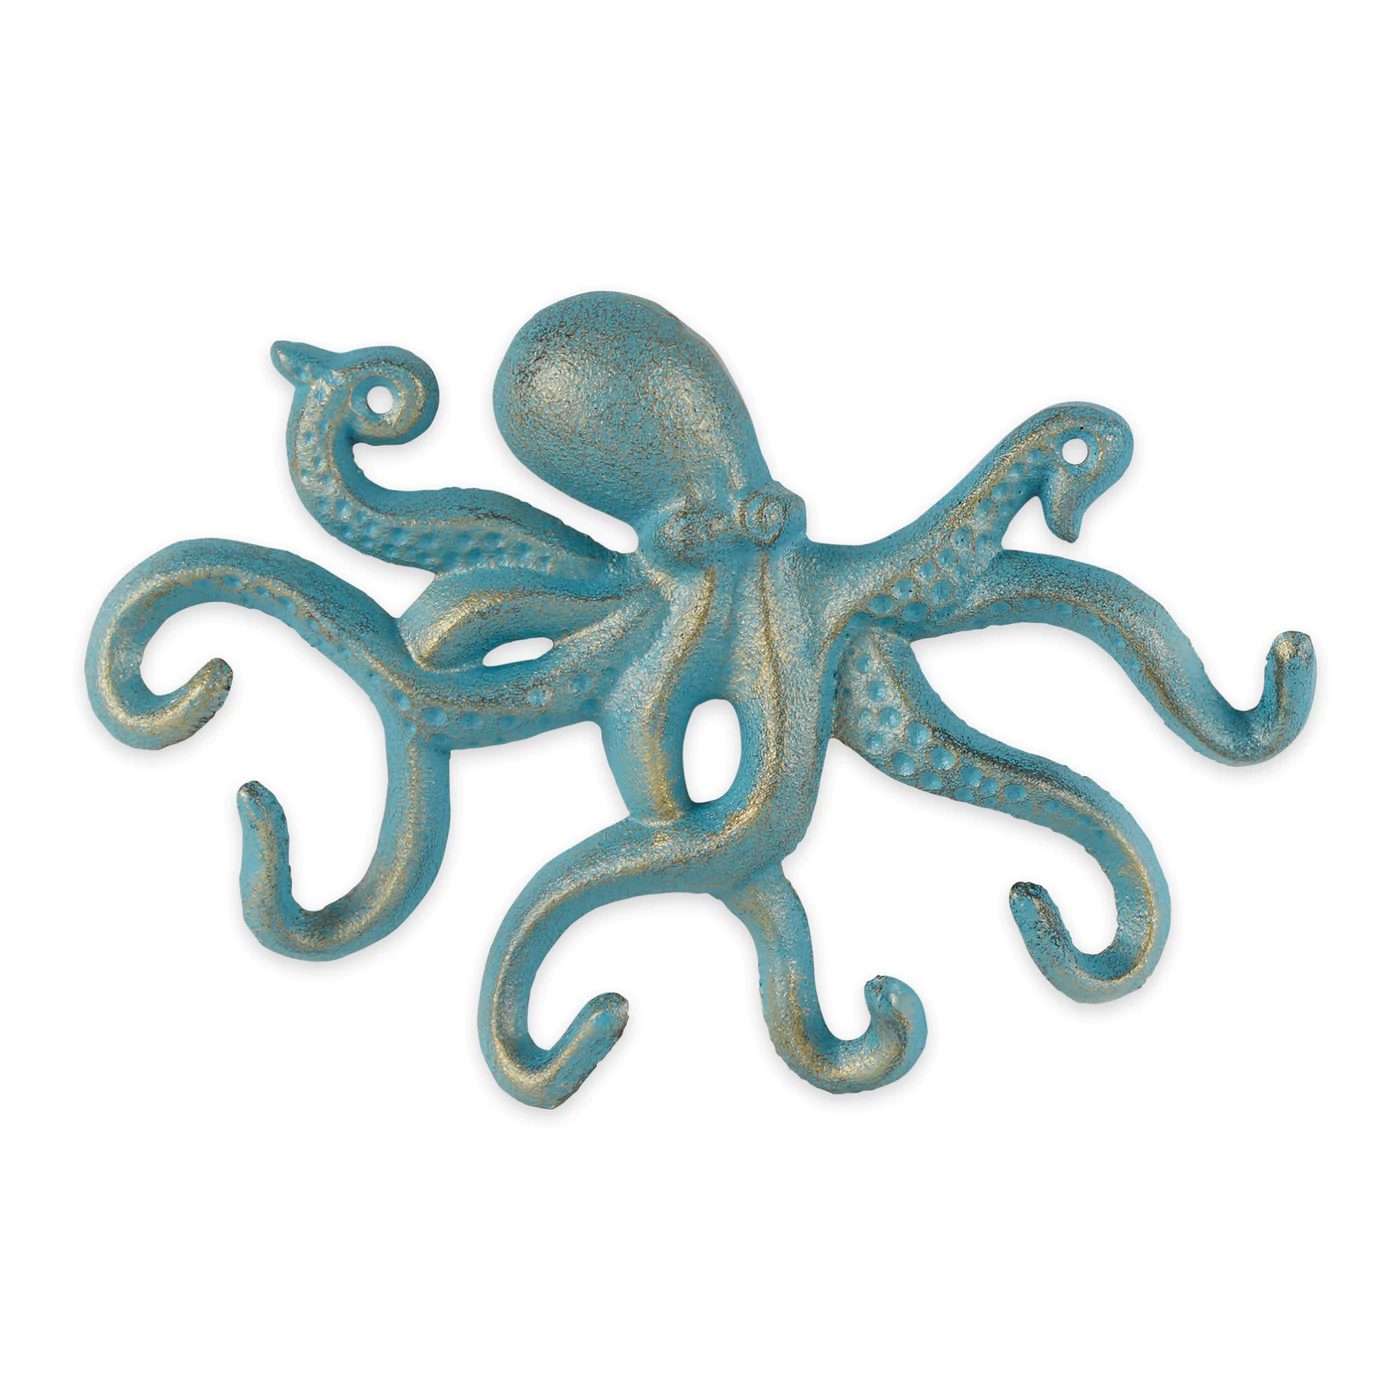 Octopus Wall Hook - $25.46